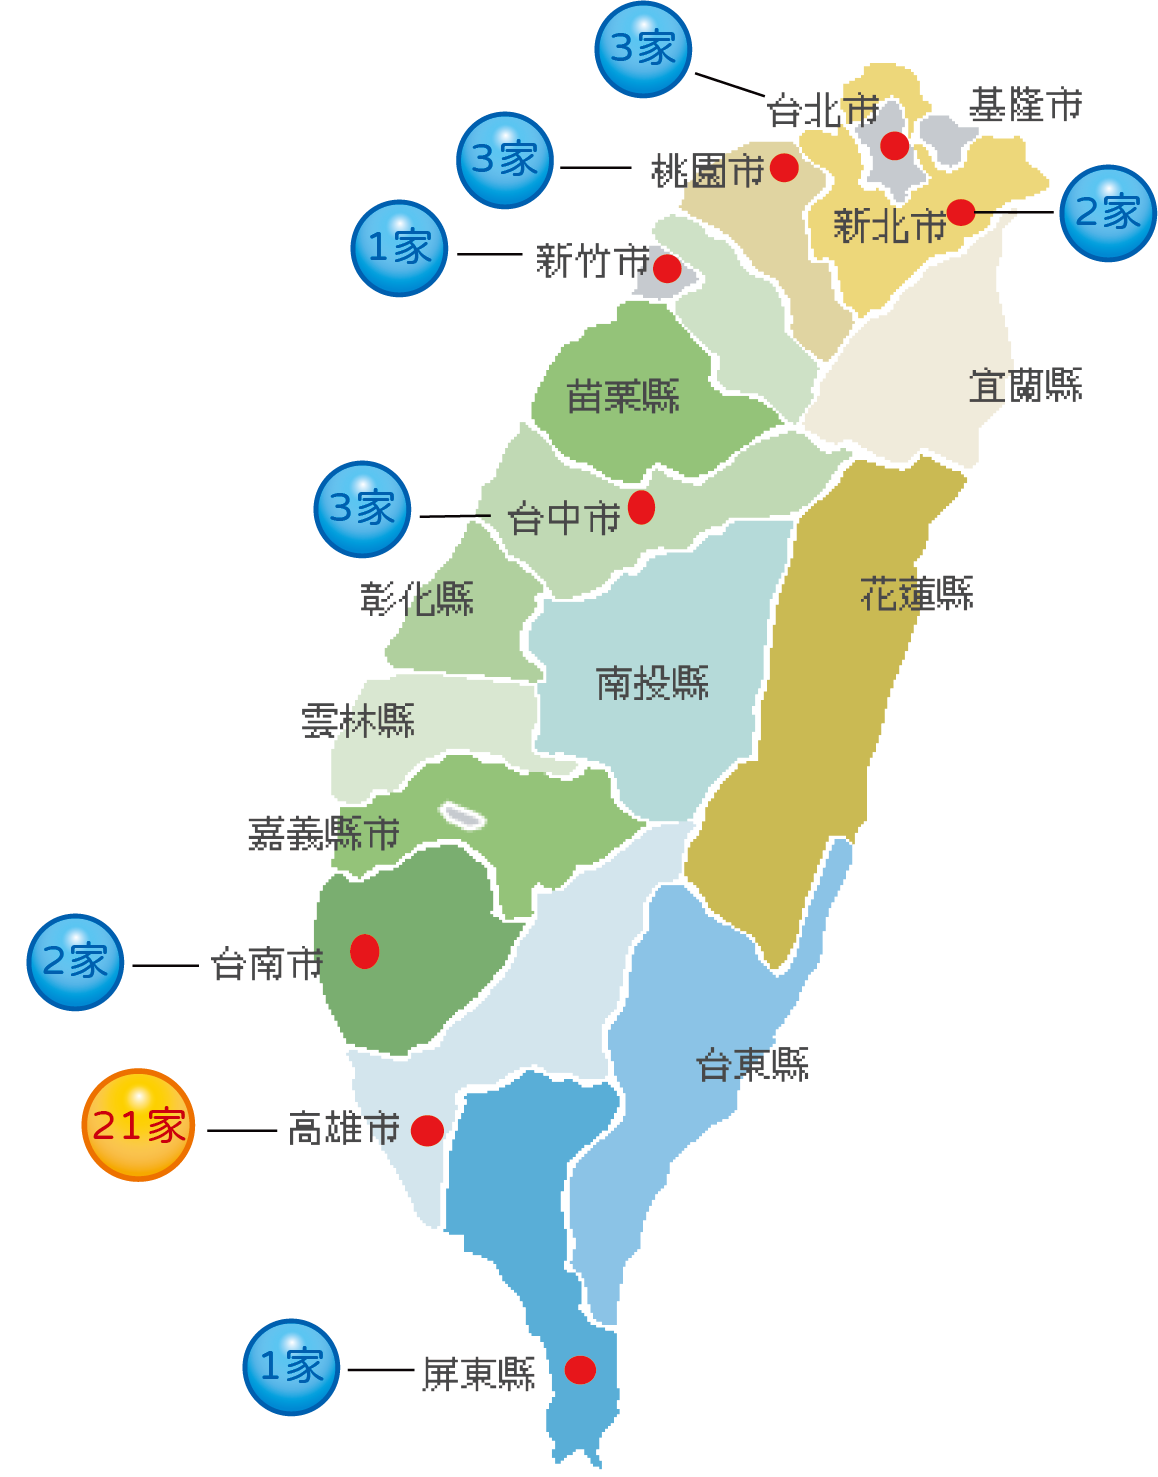 高雄銀行36家分行地圖